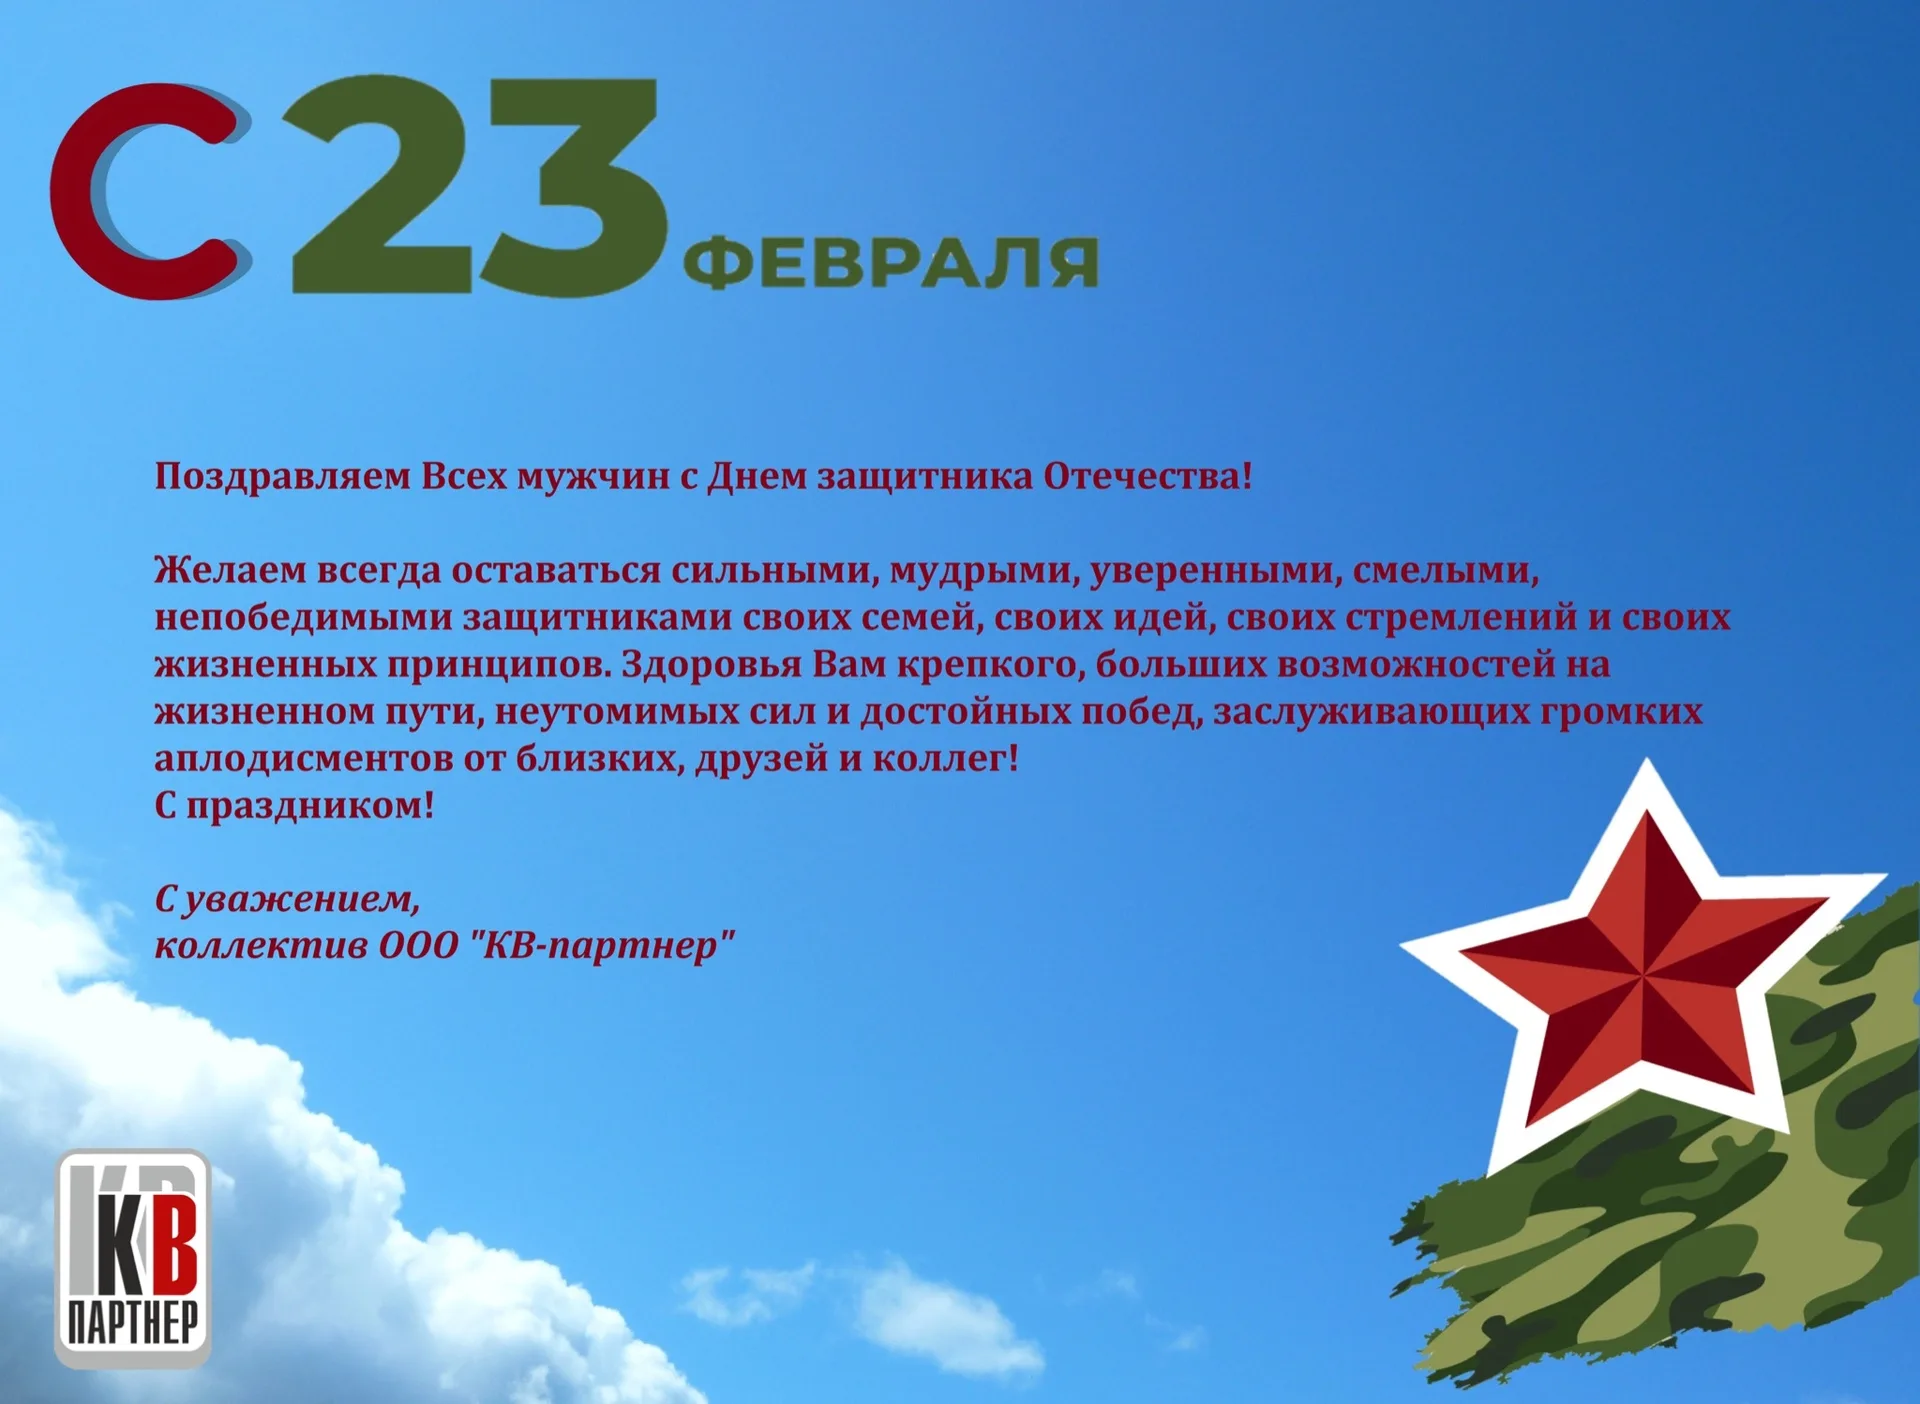 Фото Поздравления с Днем защитника в Казахстане на казахском языке с переводом #87